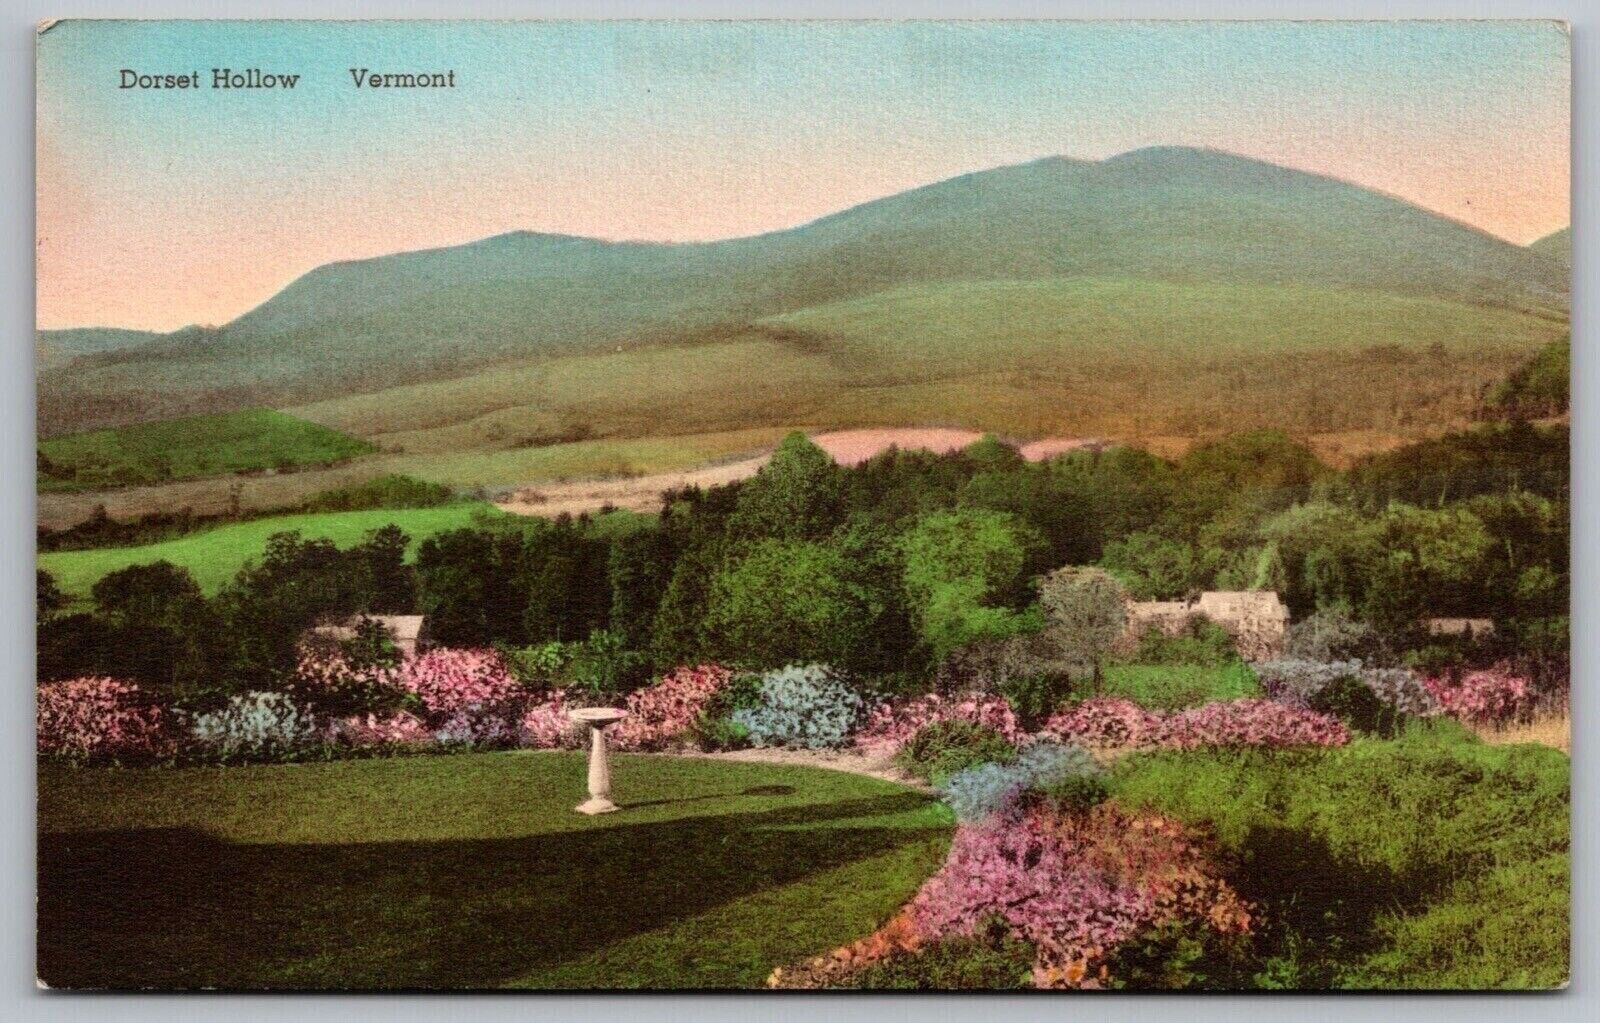 Dorset Hollow Vermont Flower Garden Bird Bath Mountains Forest VNG UNP Postcard